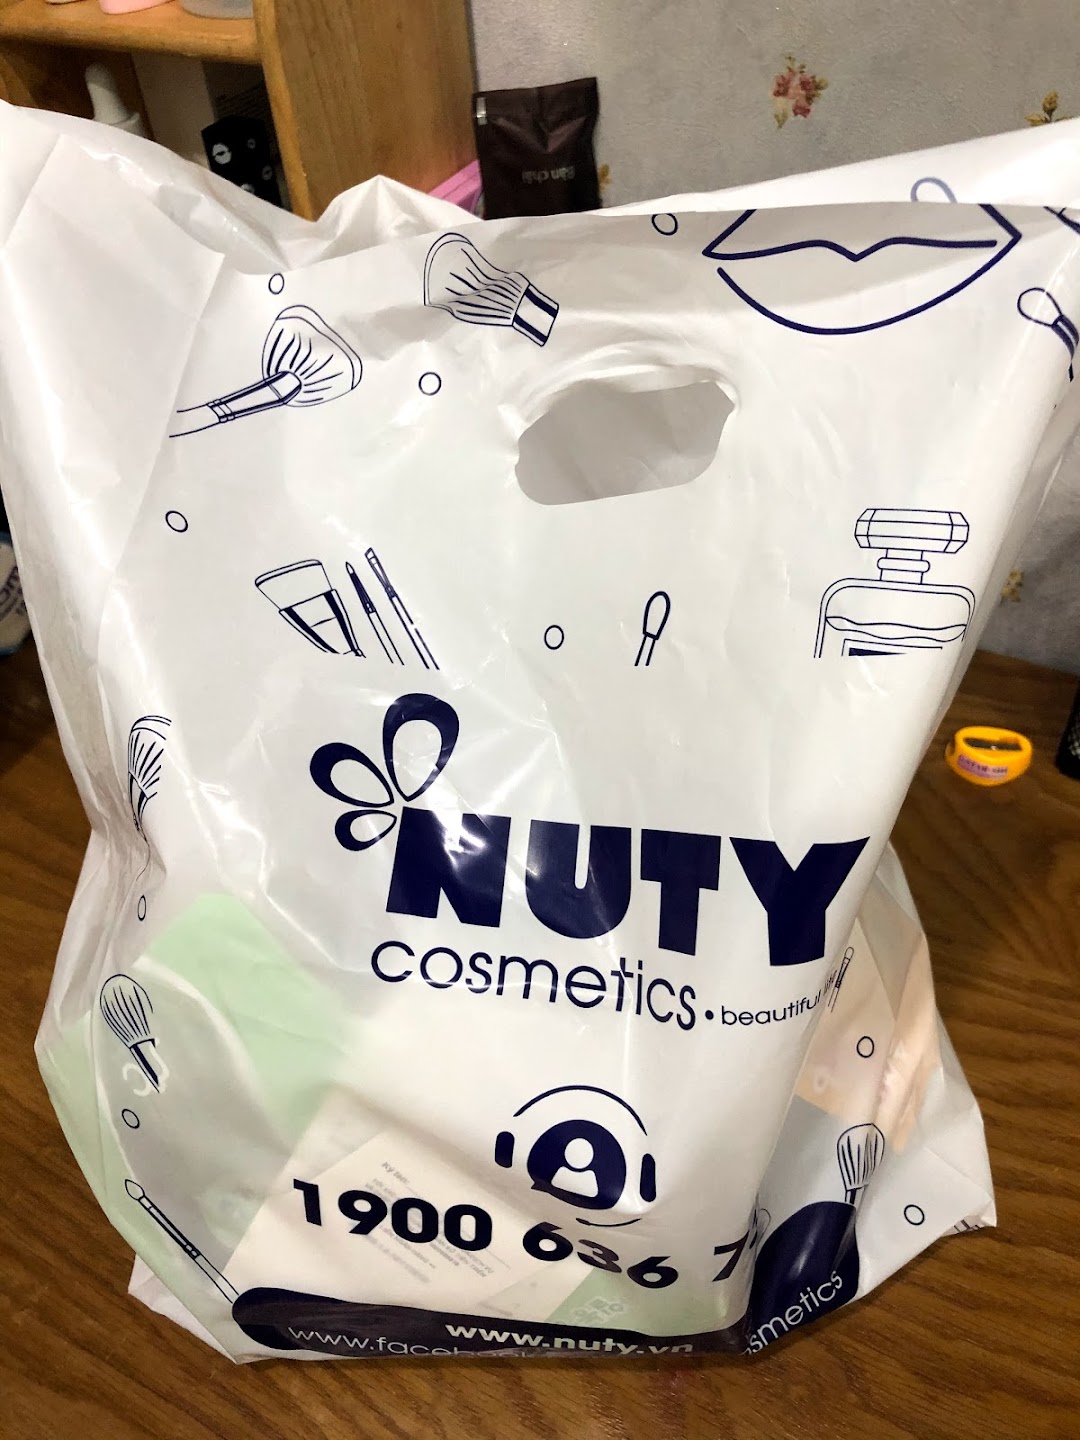 Nuty Cosmetics - Quận 9